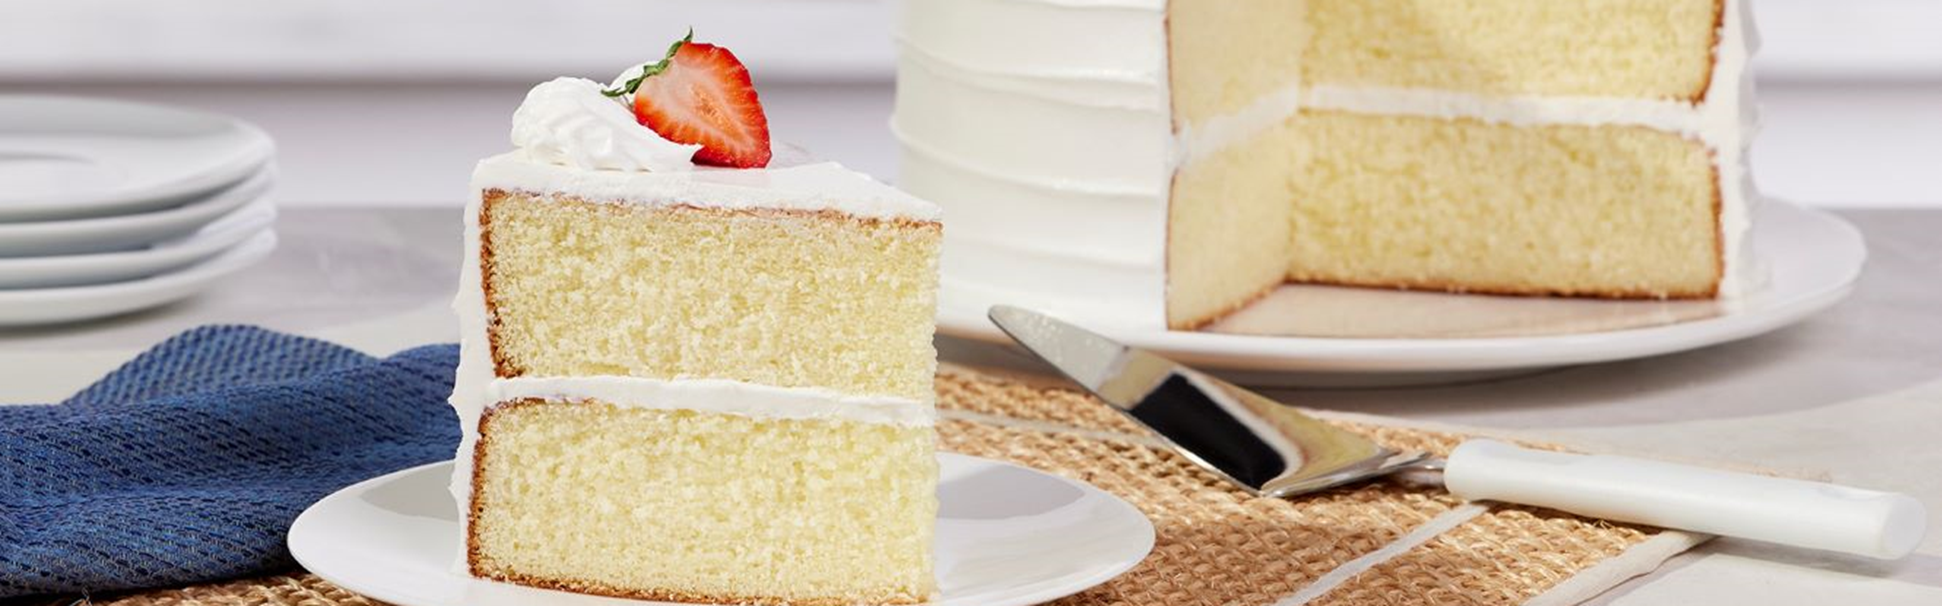 Vantage Food Debuts Cake Emulsifier